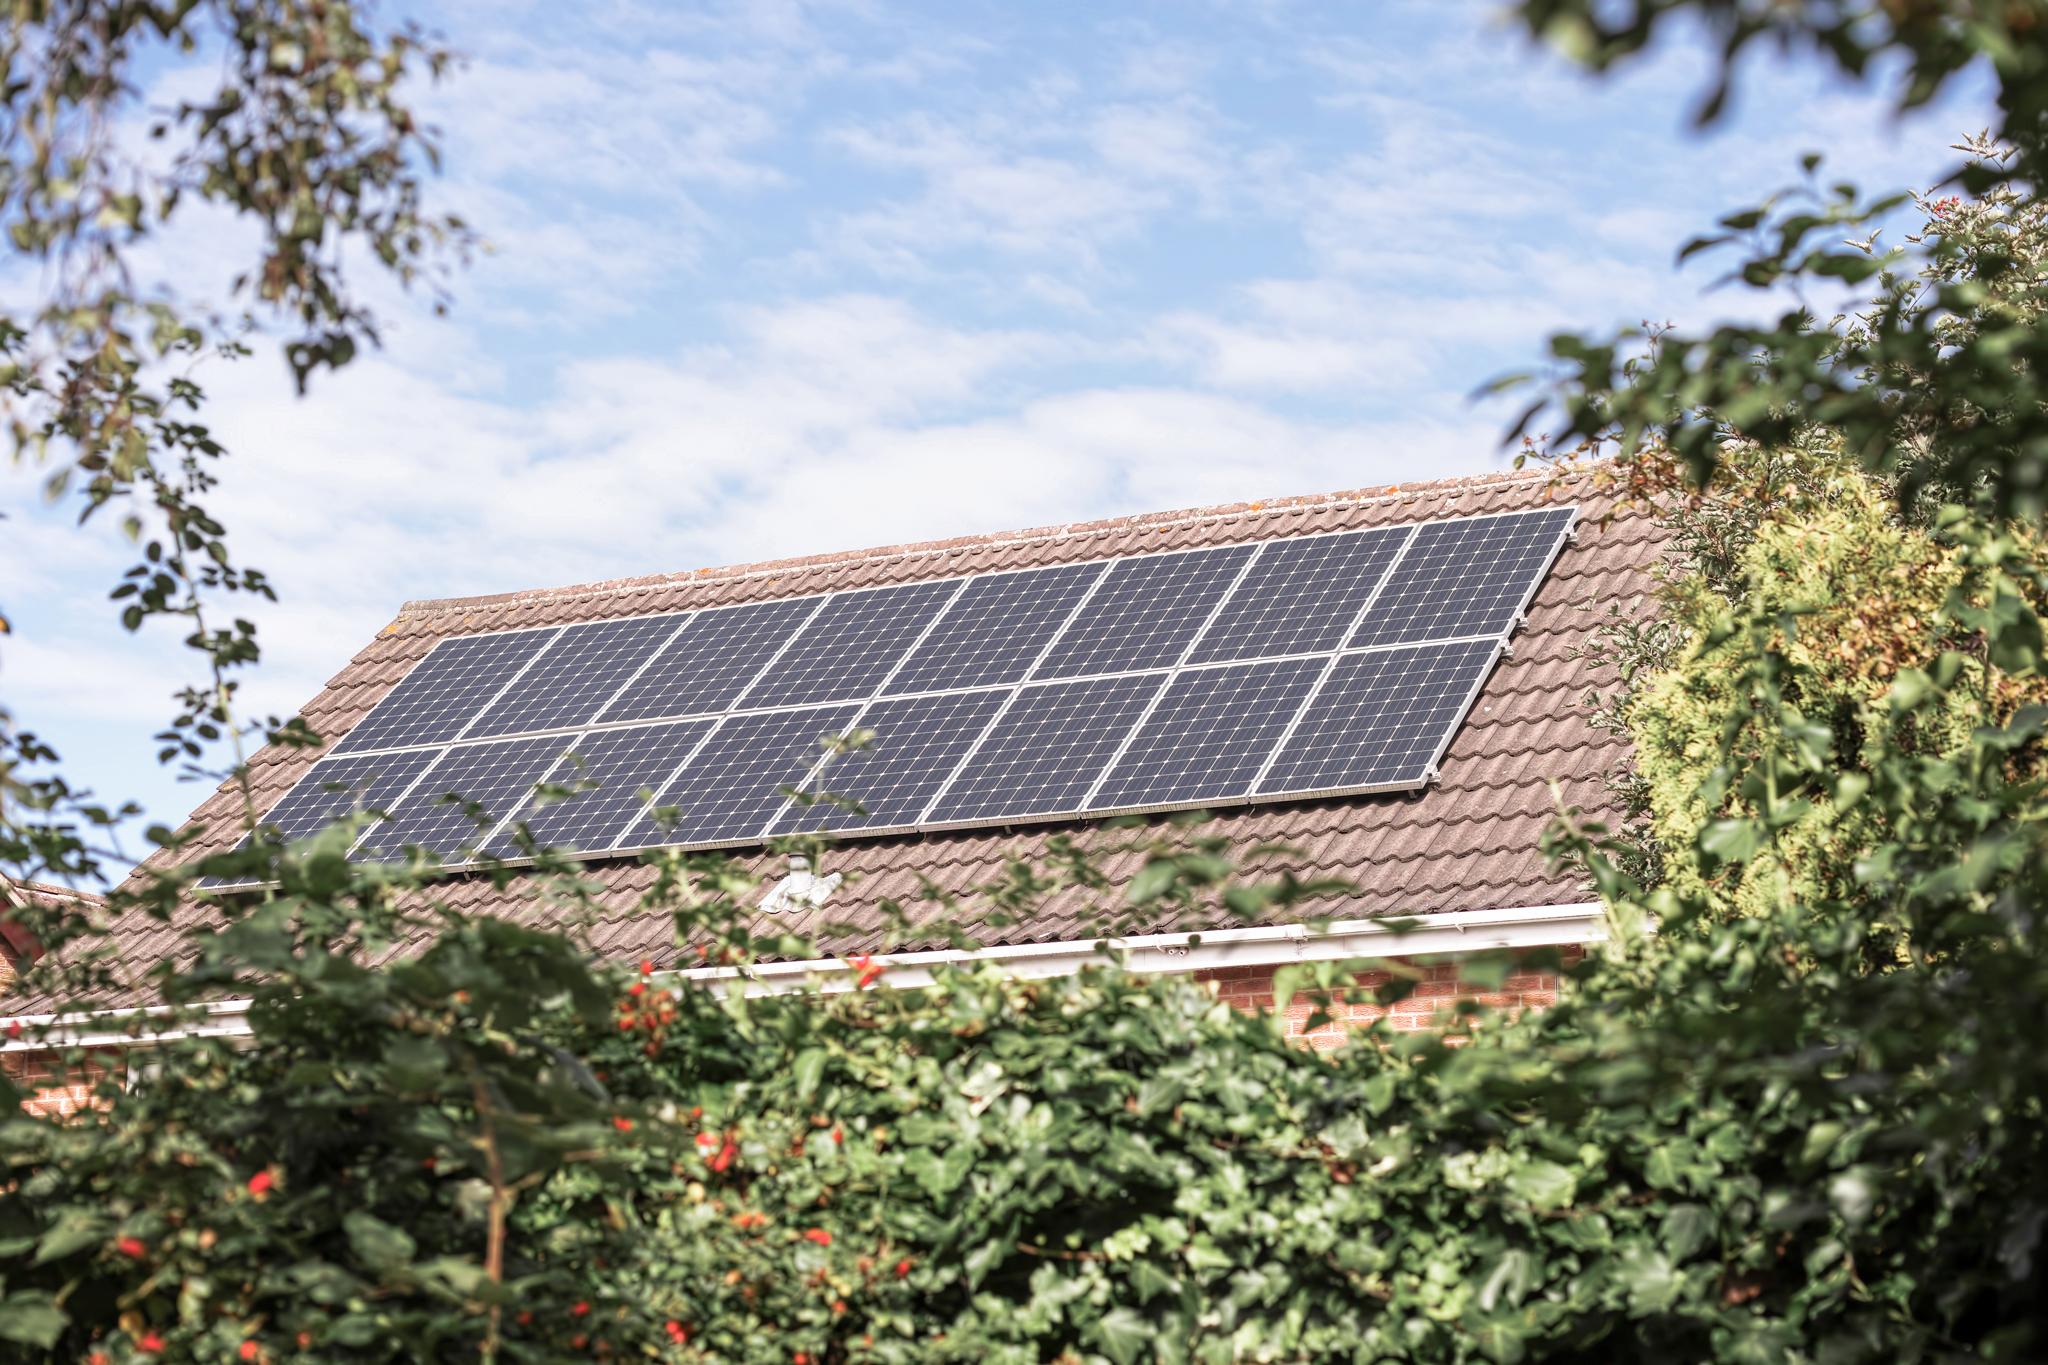 Dach eines Einfamilienhauses mit PV-Anlage – Photovoltaik in Hessen